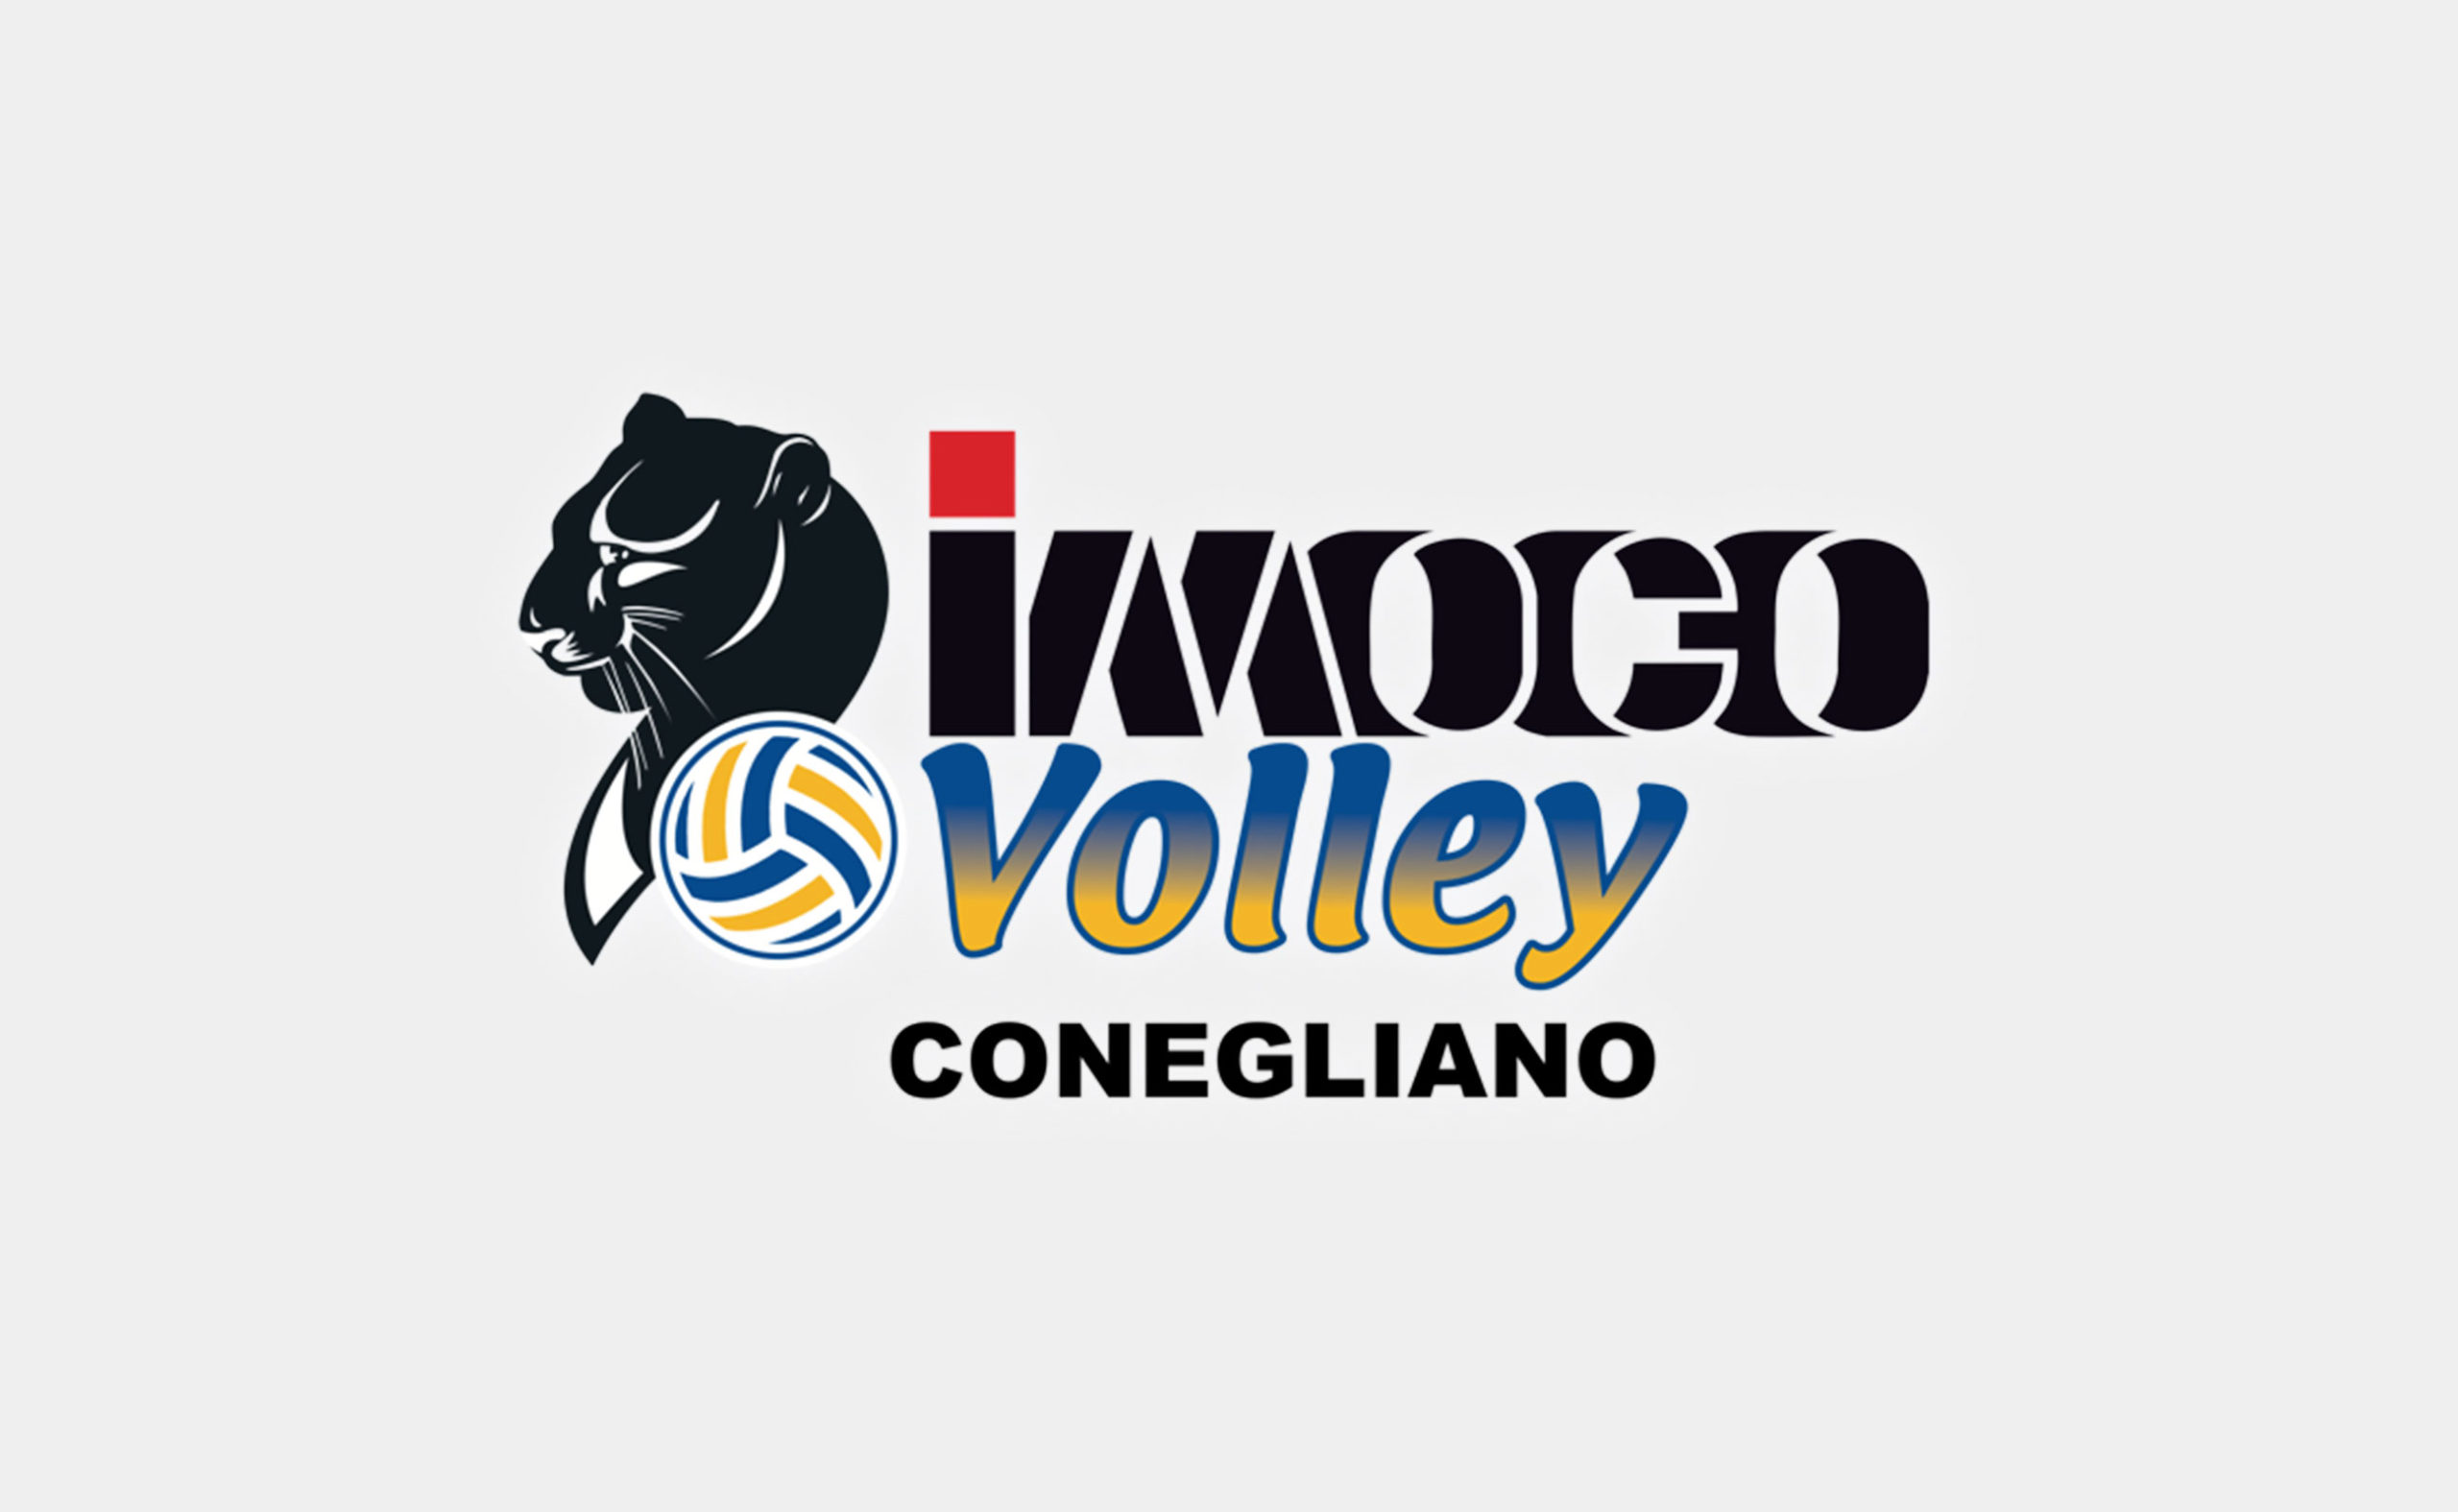 IMOCO volley Conegliano